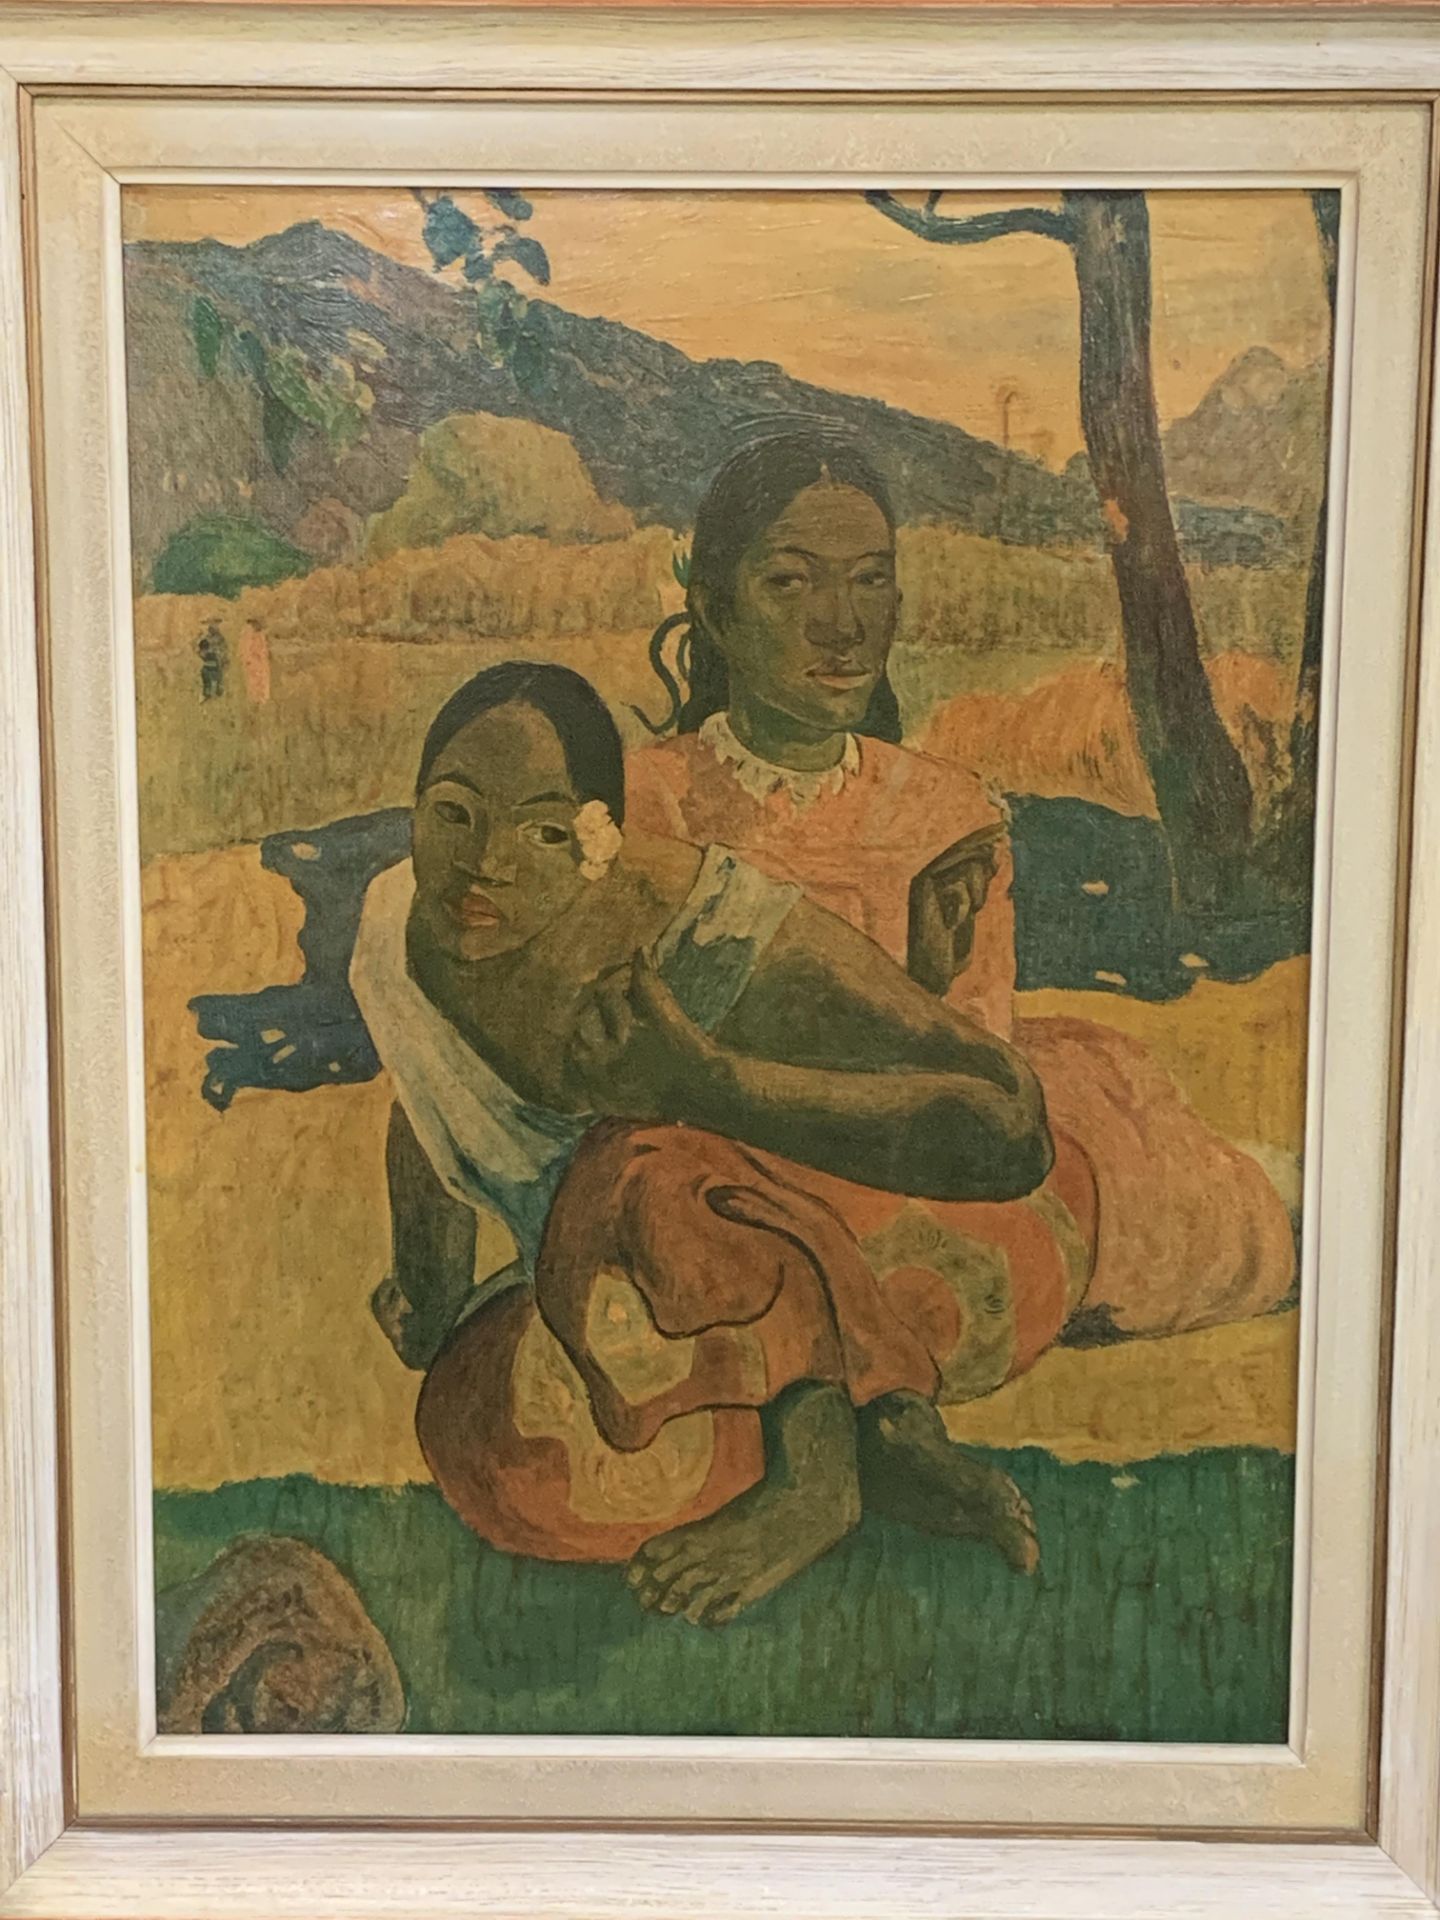 Framed oleograph after Paul Gauguin